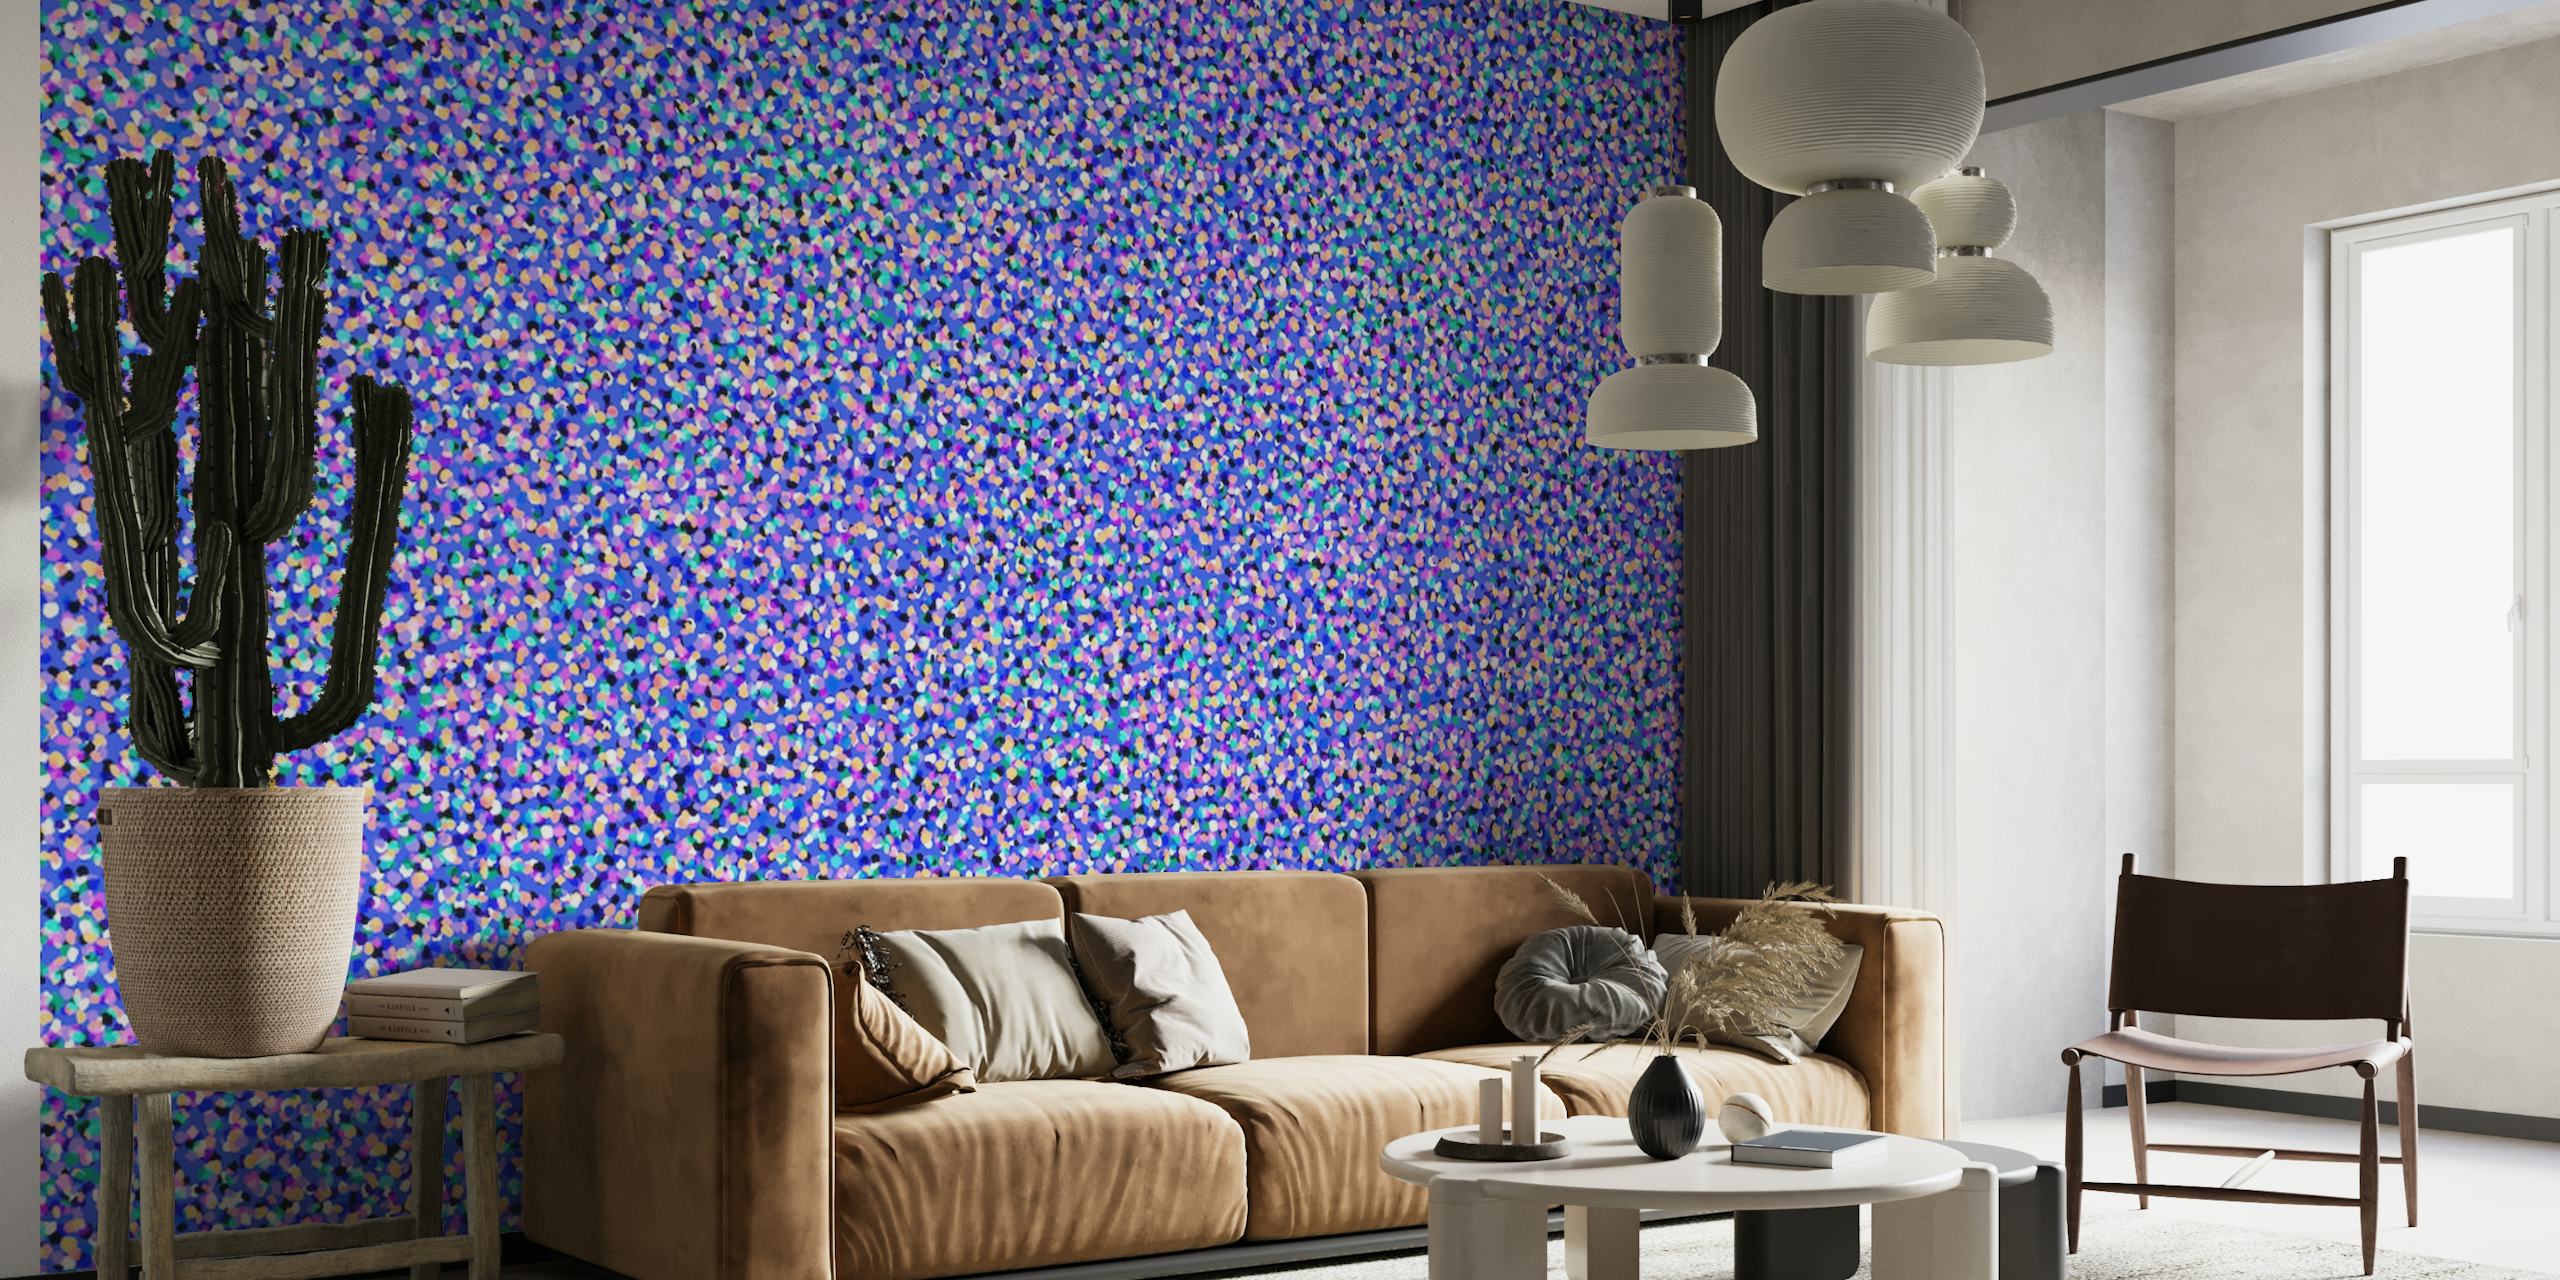 Abstrakt blåklokke-tonet vægmaleri med dynamisk tekstureffekt